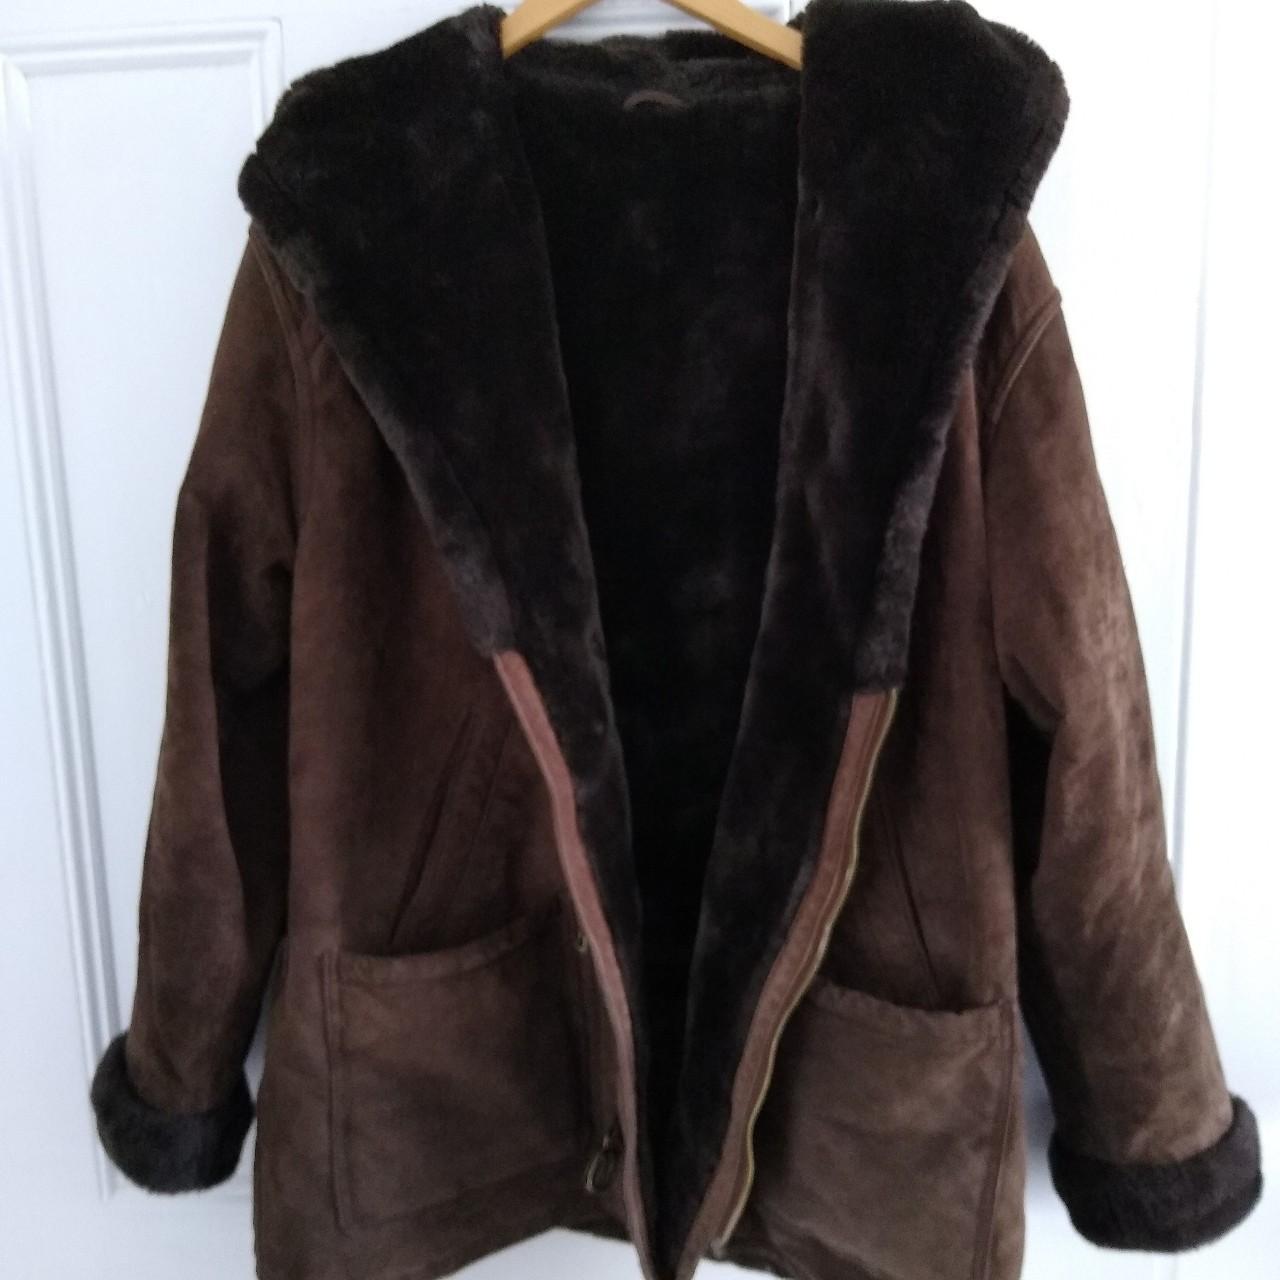 Vintage brown suede jacket, genuine leather, with... - Depop